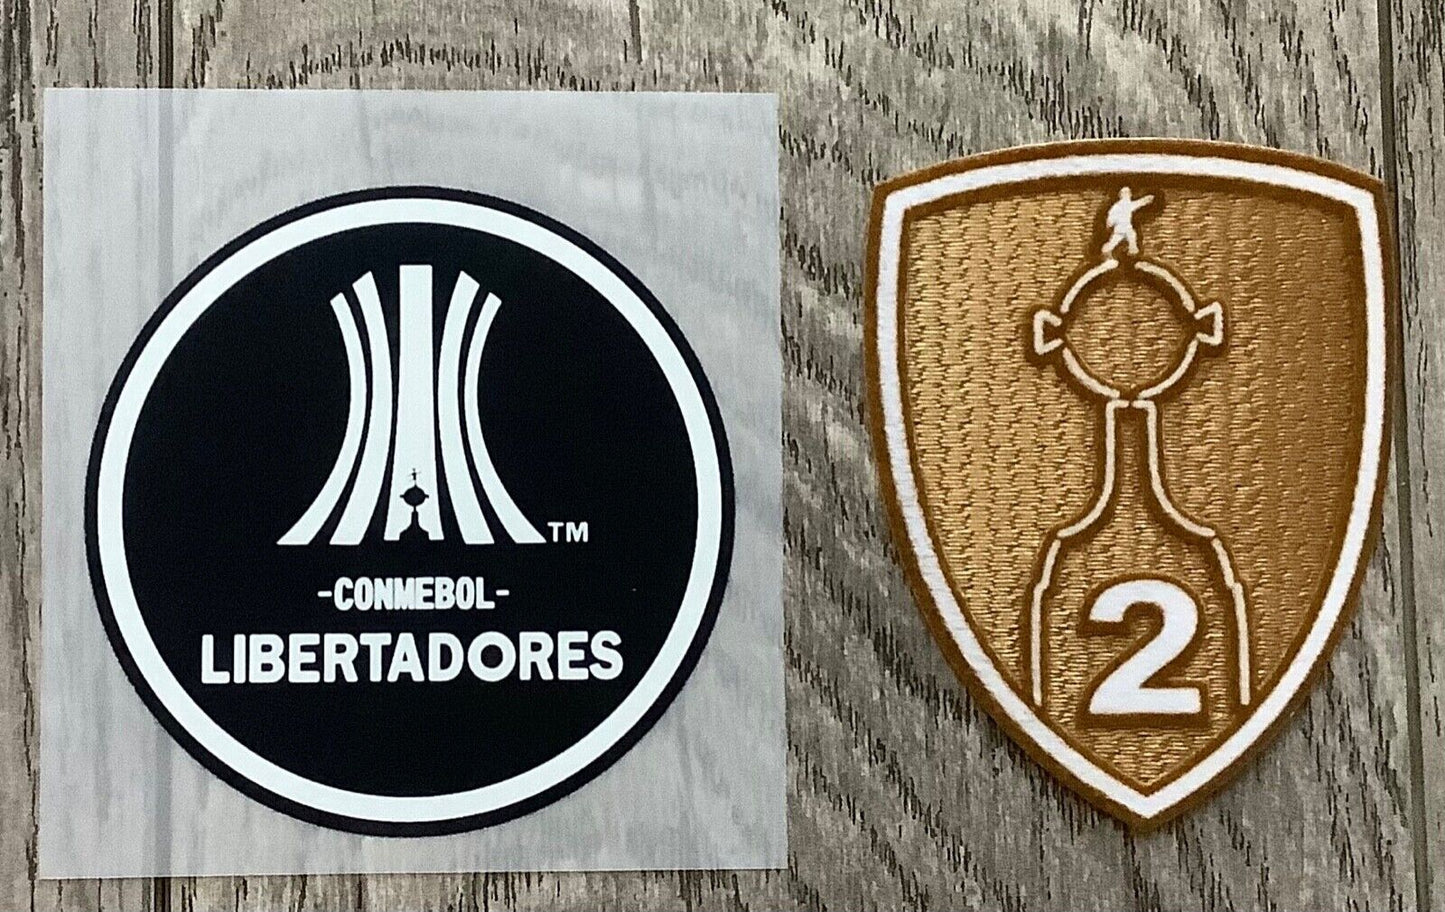 Copa Libertadores Badge Set